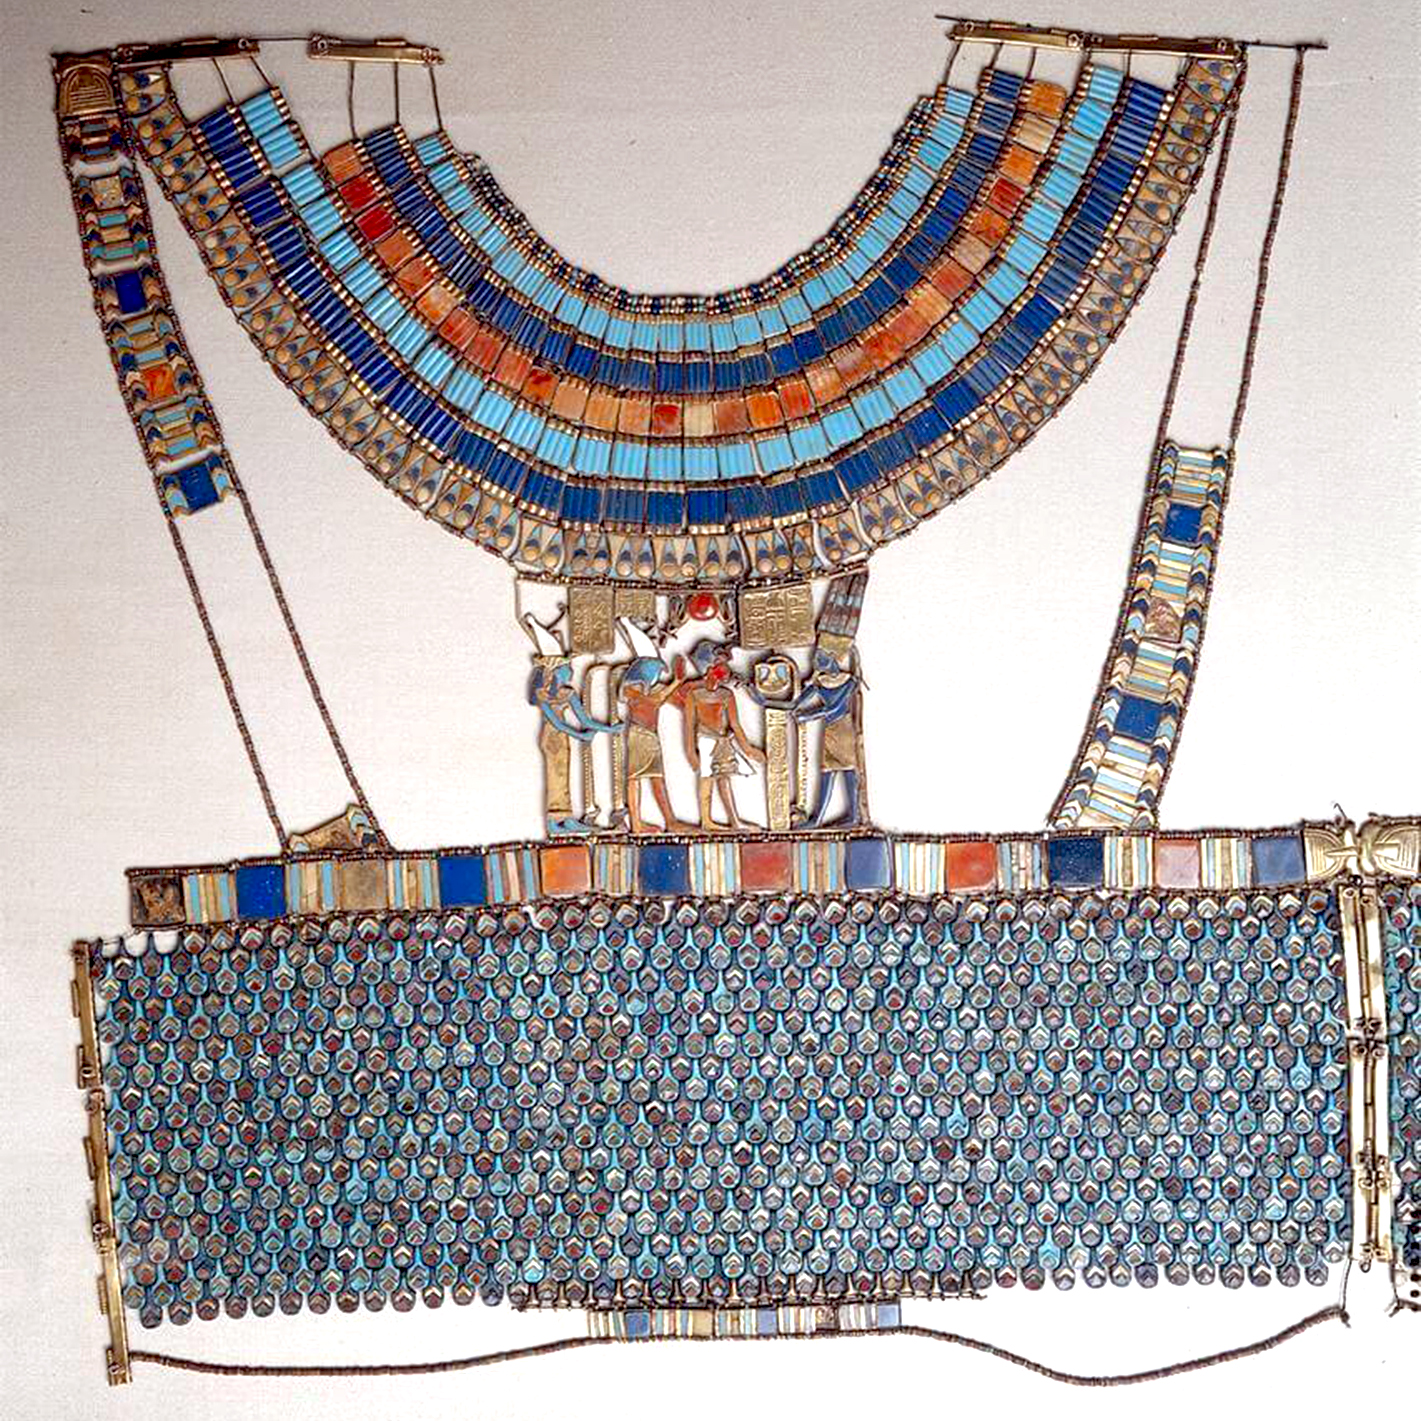 Ожерелье Пектораль древнего Египта